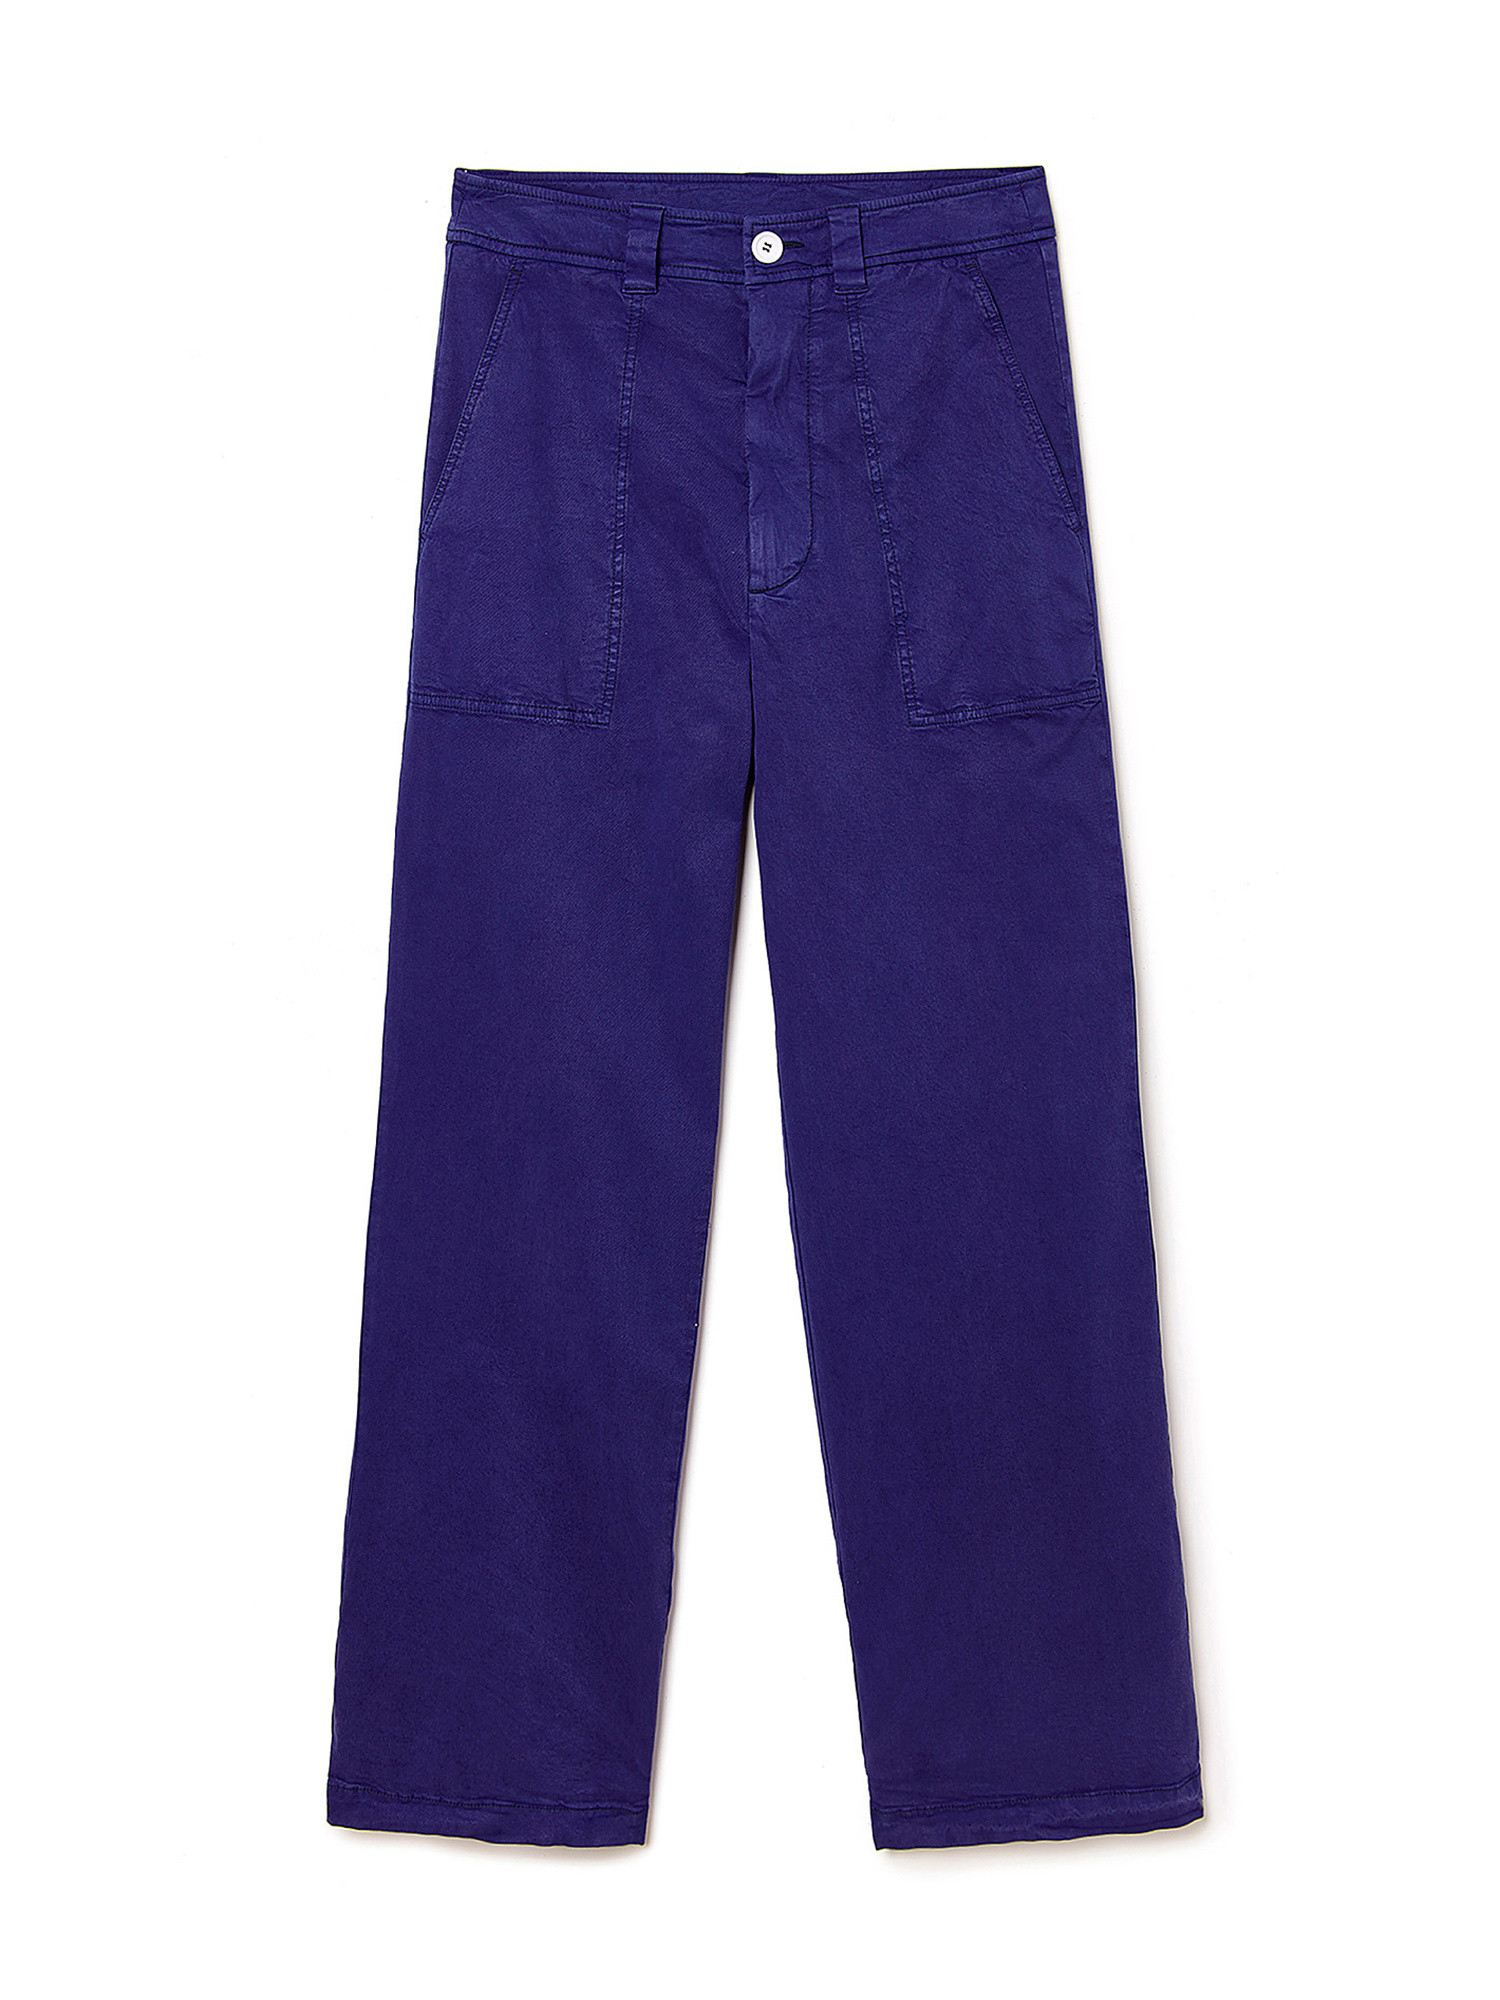 Pantaloni Eugene in twill di cotone tinto in capo e lyocell elasticizzato, Blu, large